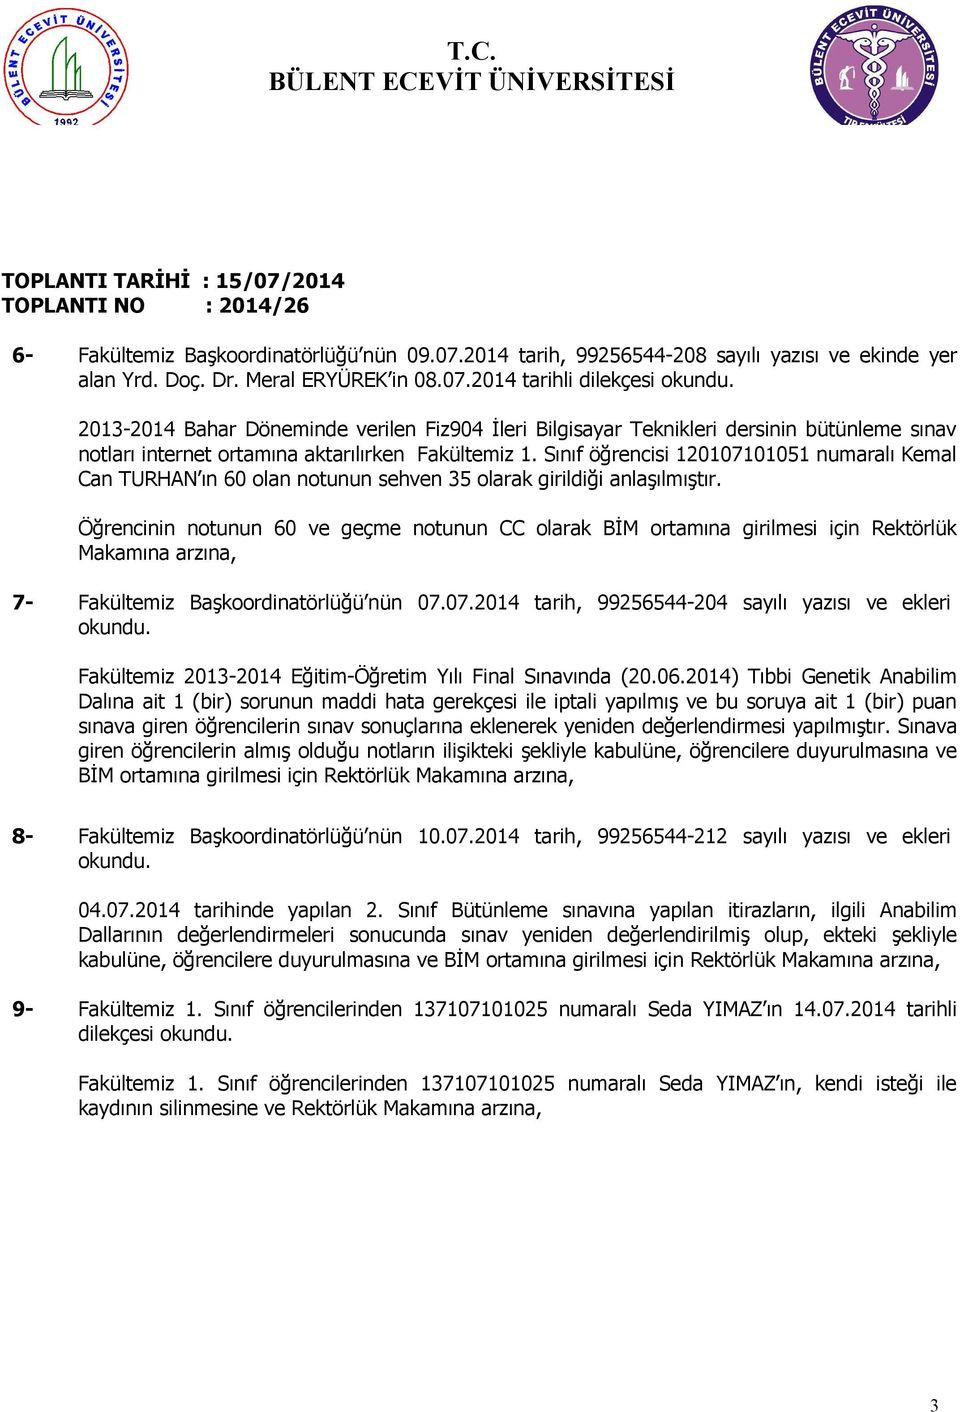 Sınıf öğrencisi 120107101051 numaralı Kemal Can TURHAN ın 60 olan notunun sehven 35 olarak girildiği anlaşılmıştır.